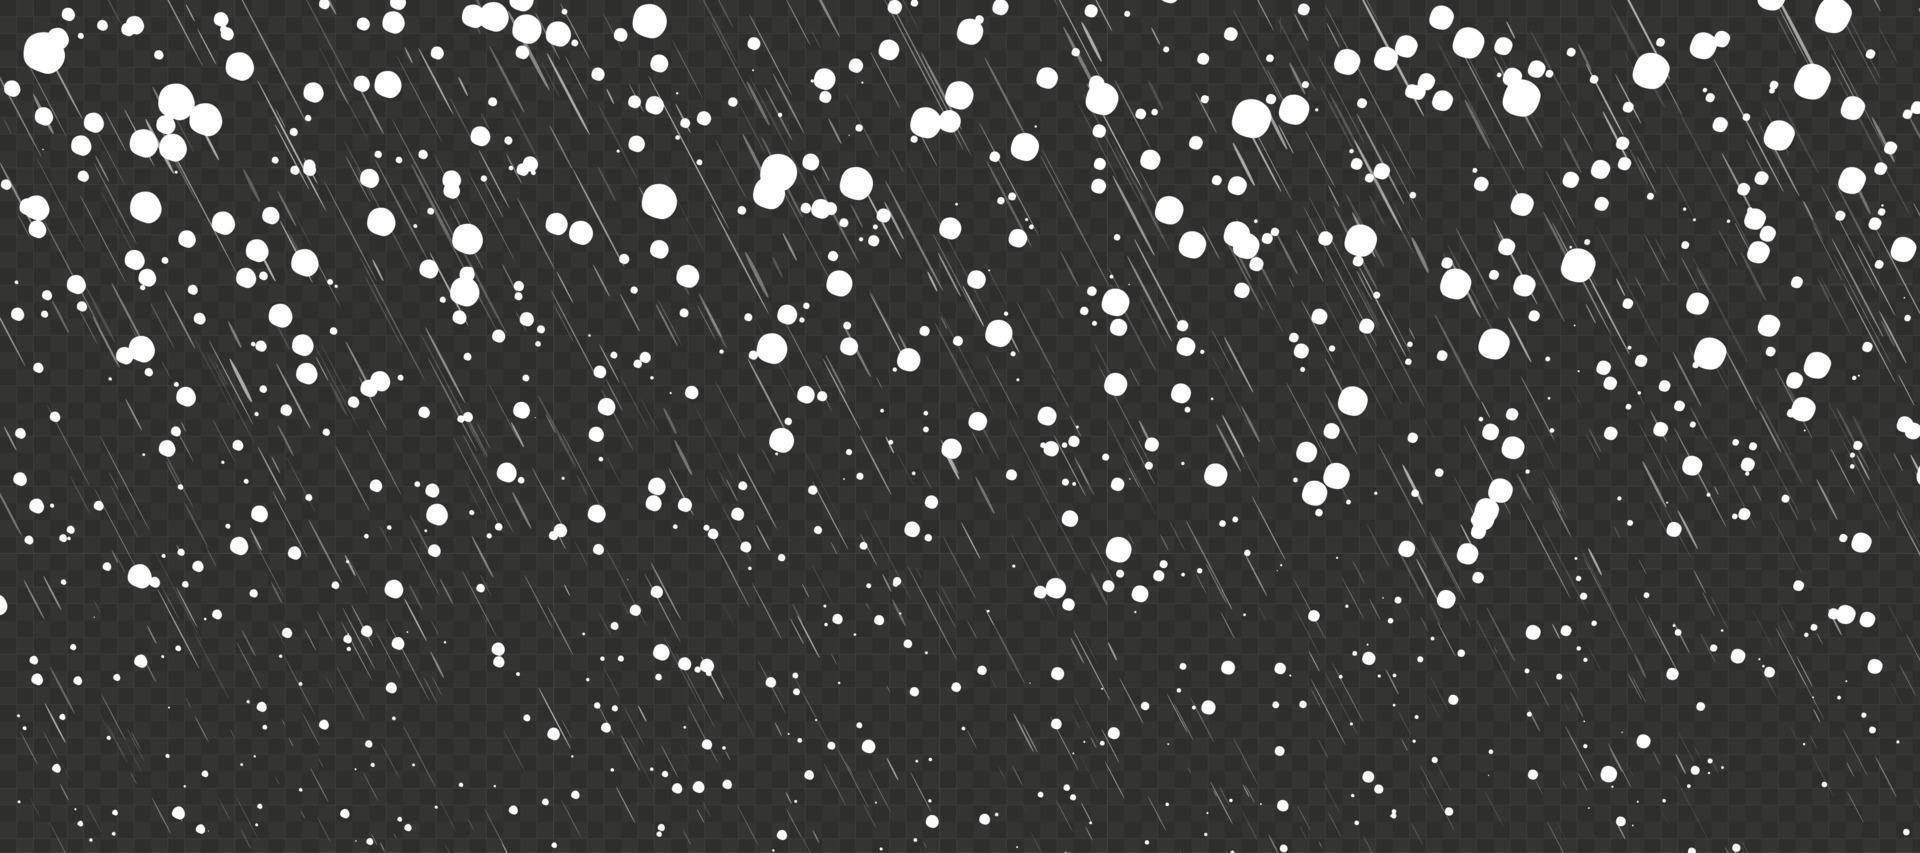 condiciones climáticas de tormenta de invierno. nevadas de dibujos animados de vacaciones con lluvia. copos al azar en el cielo sobre fondo negro vector